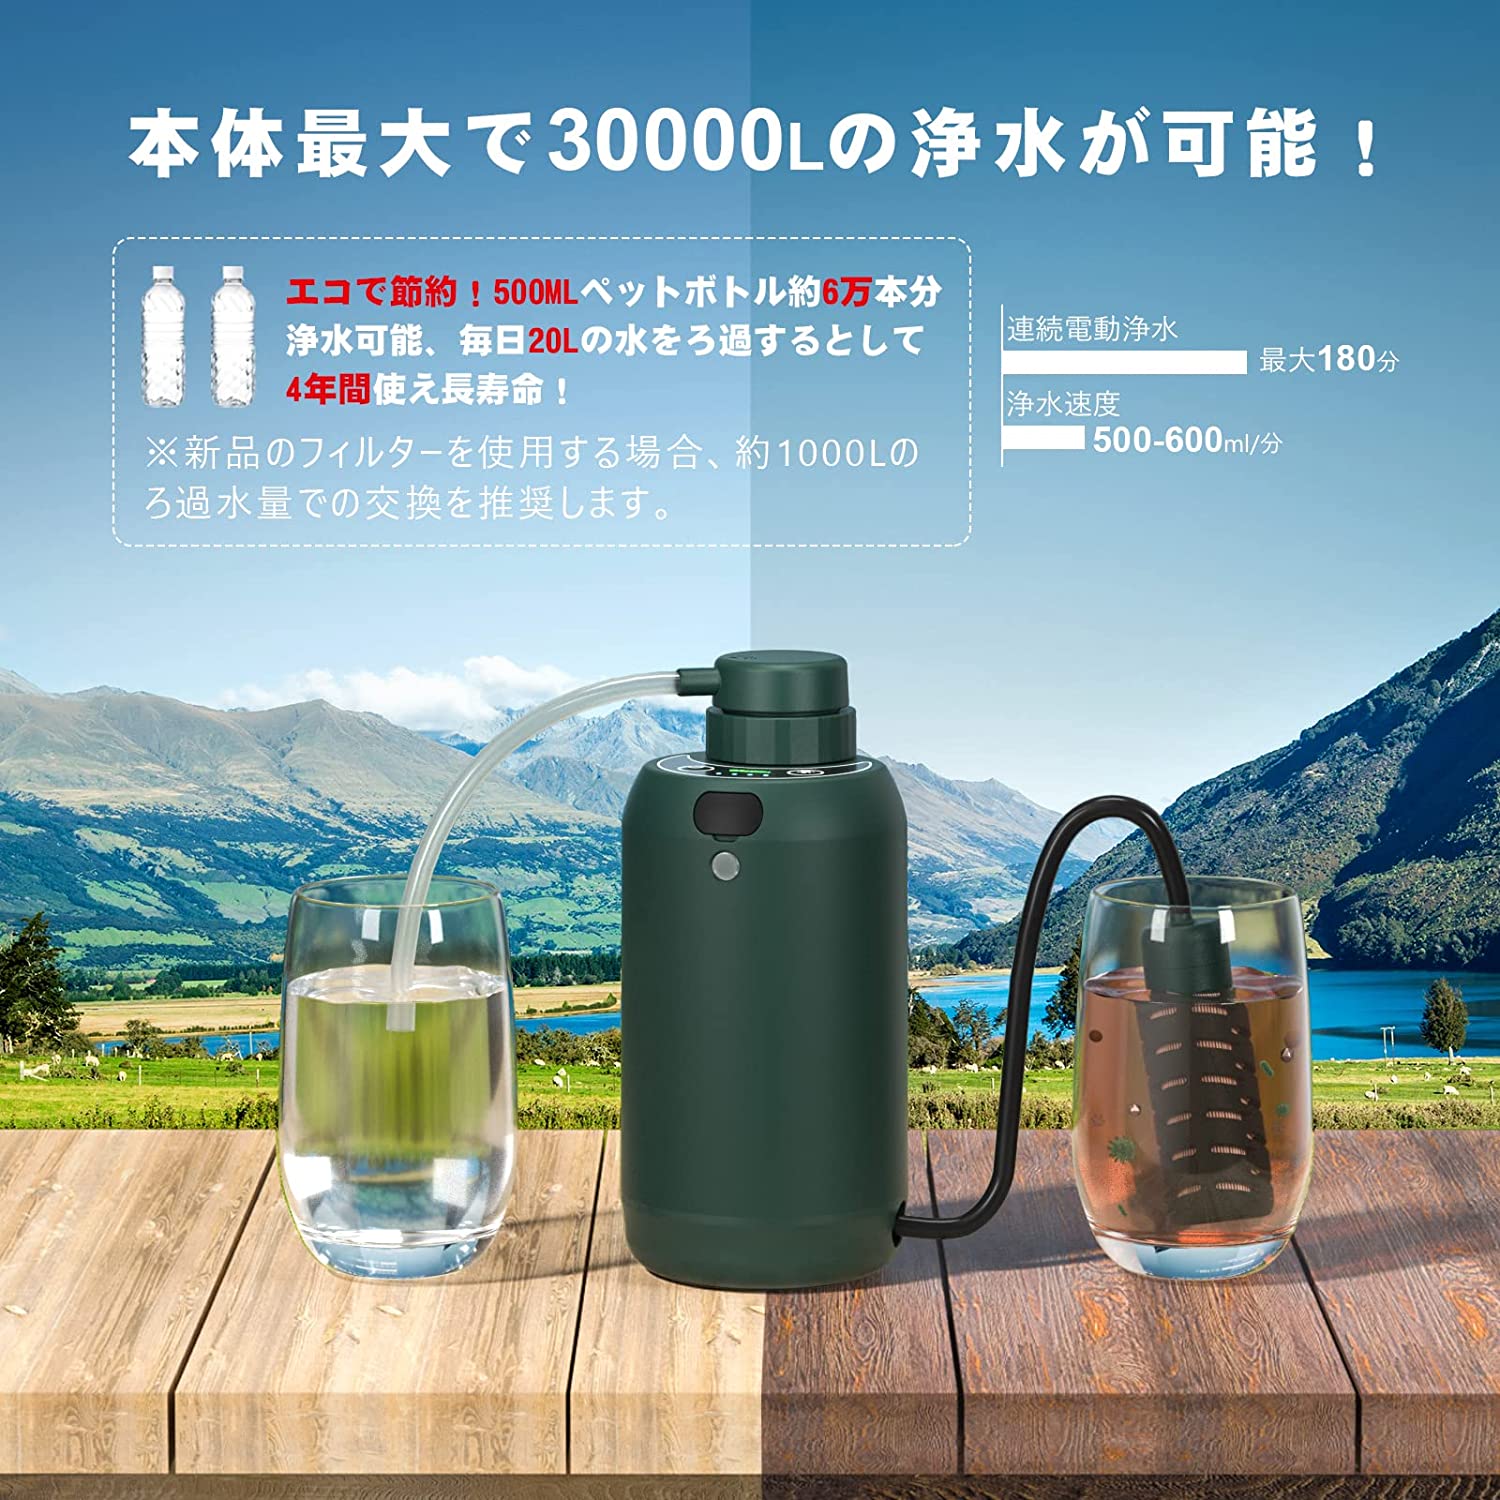 GreeShow【業界新発想】 携帯浄水器 アウトドア サバイバル浄水器 USB